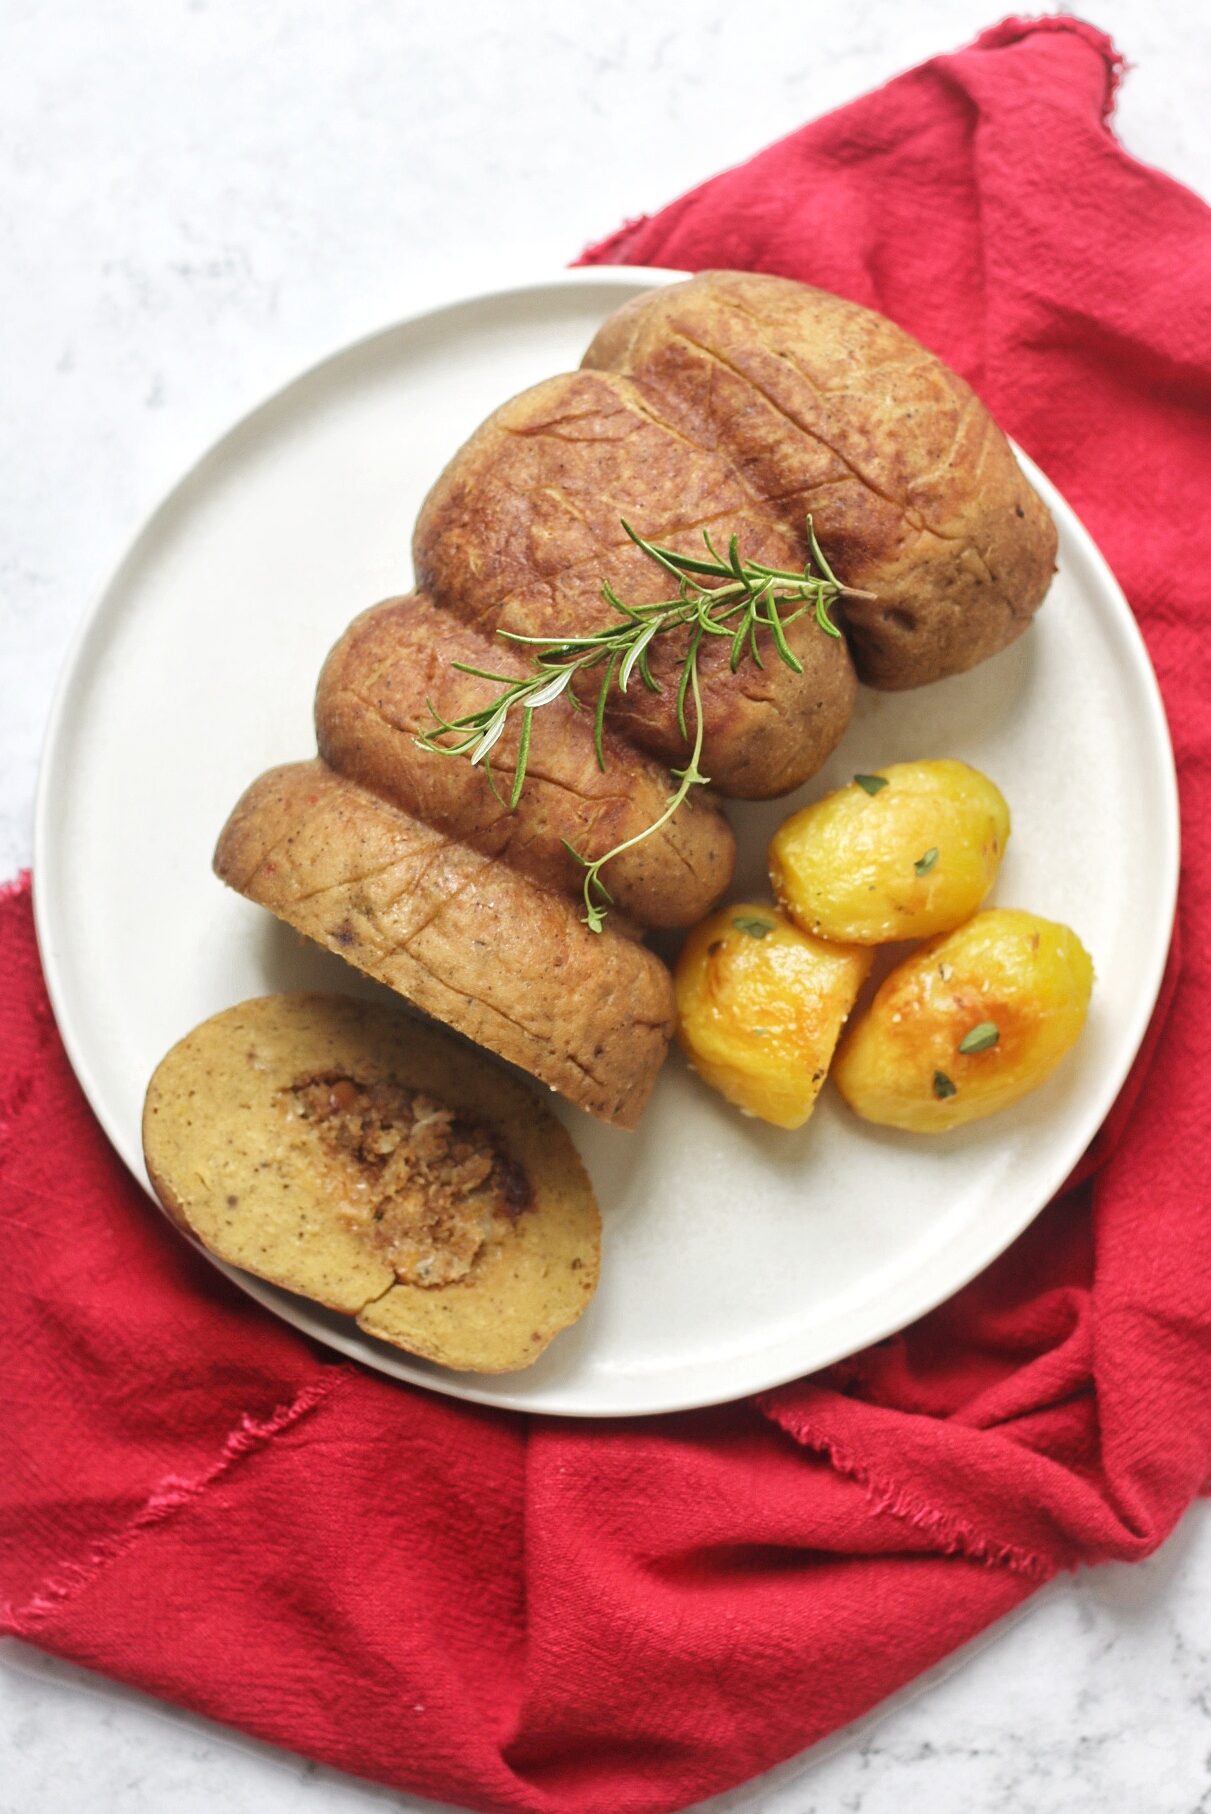 Seitan Stuffed Turkey Roast with potatoes